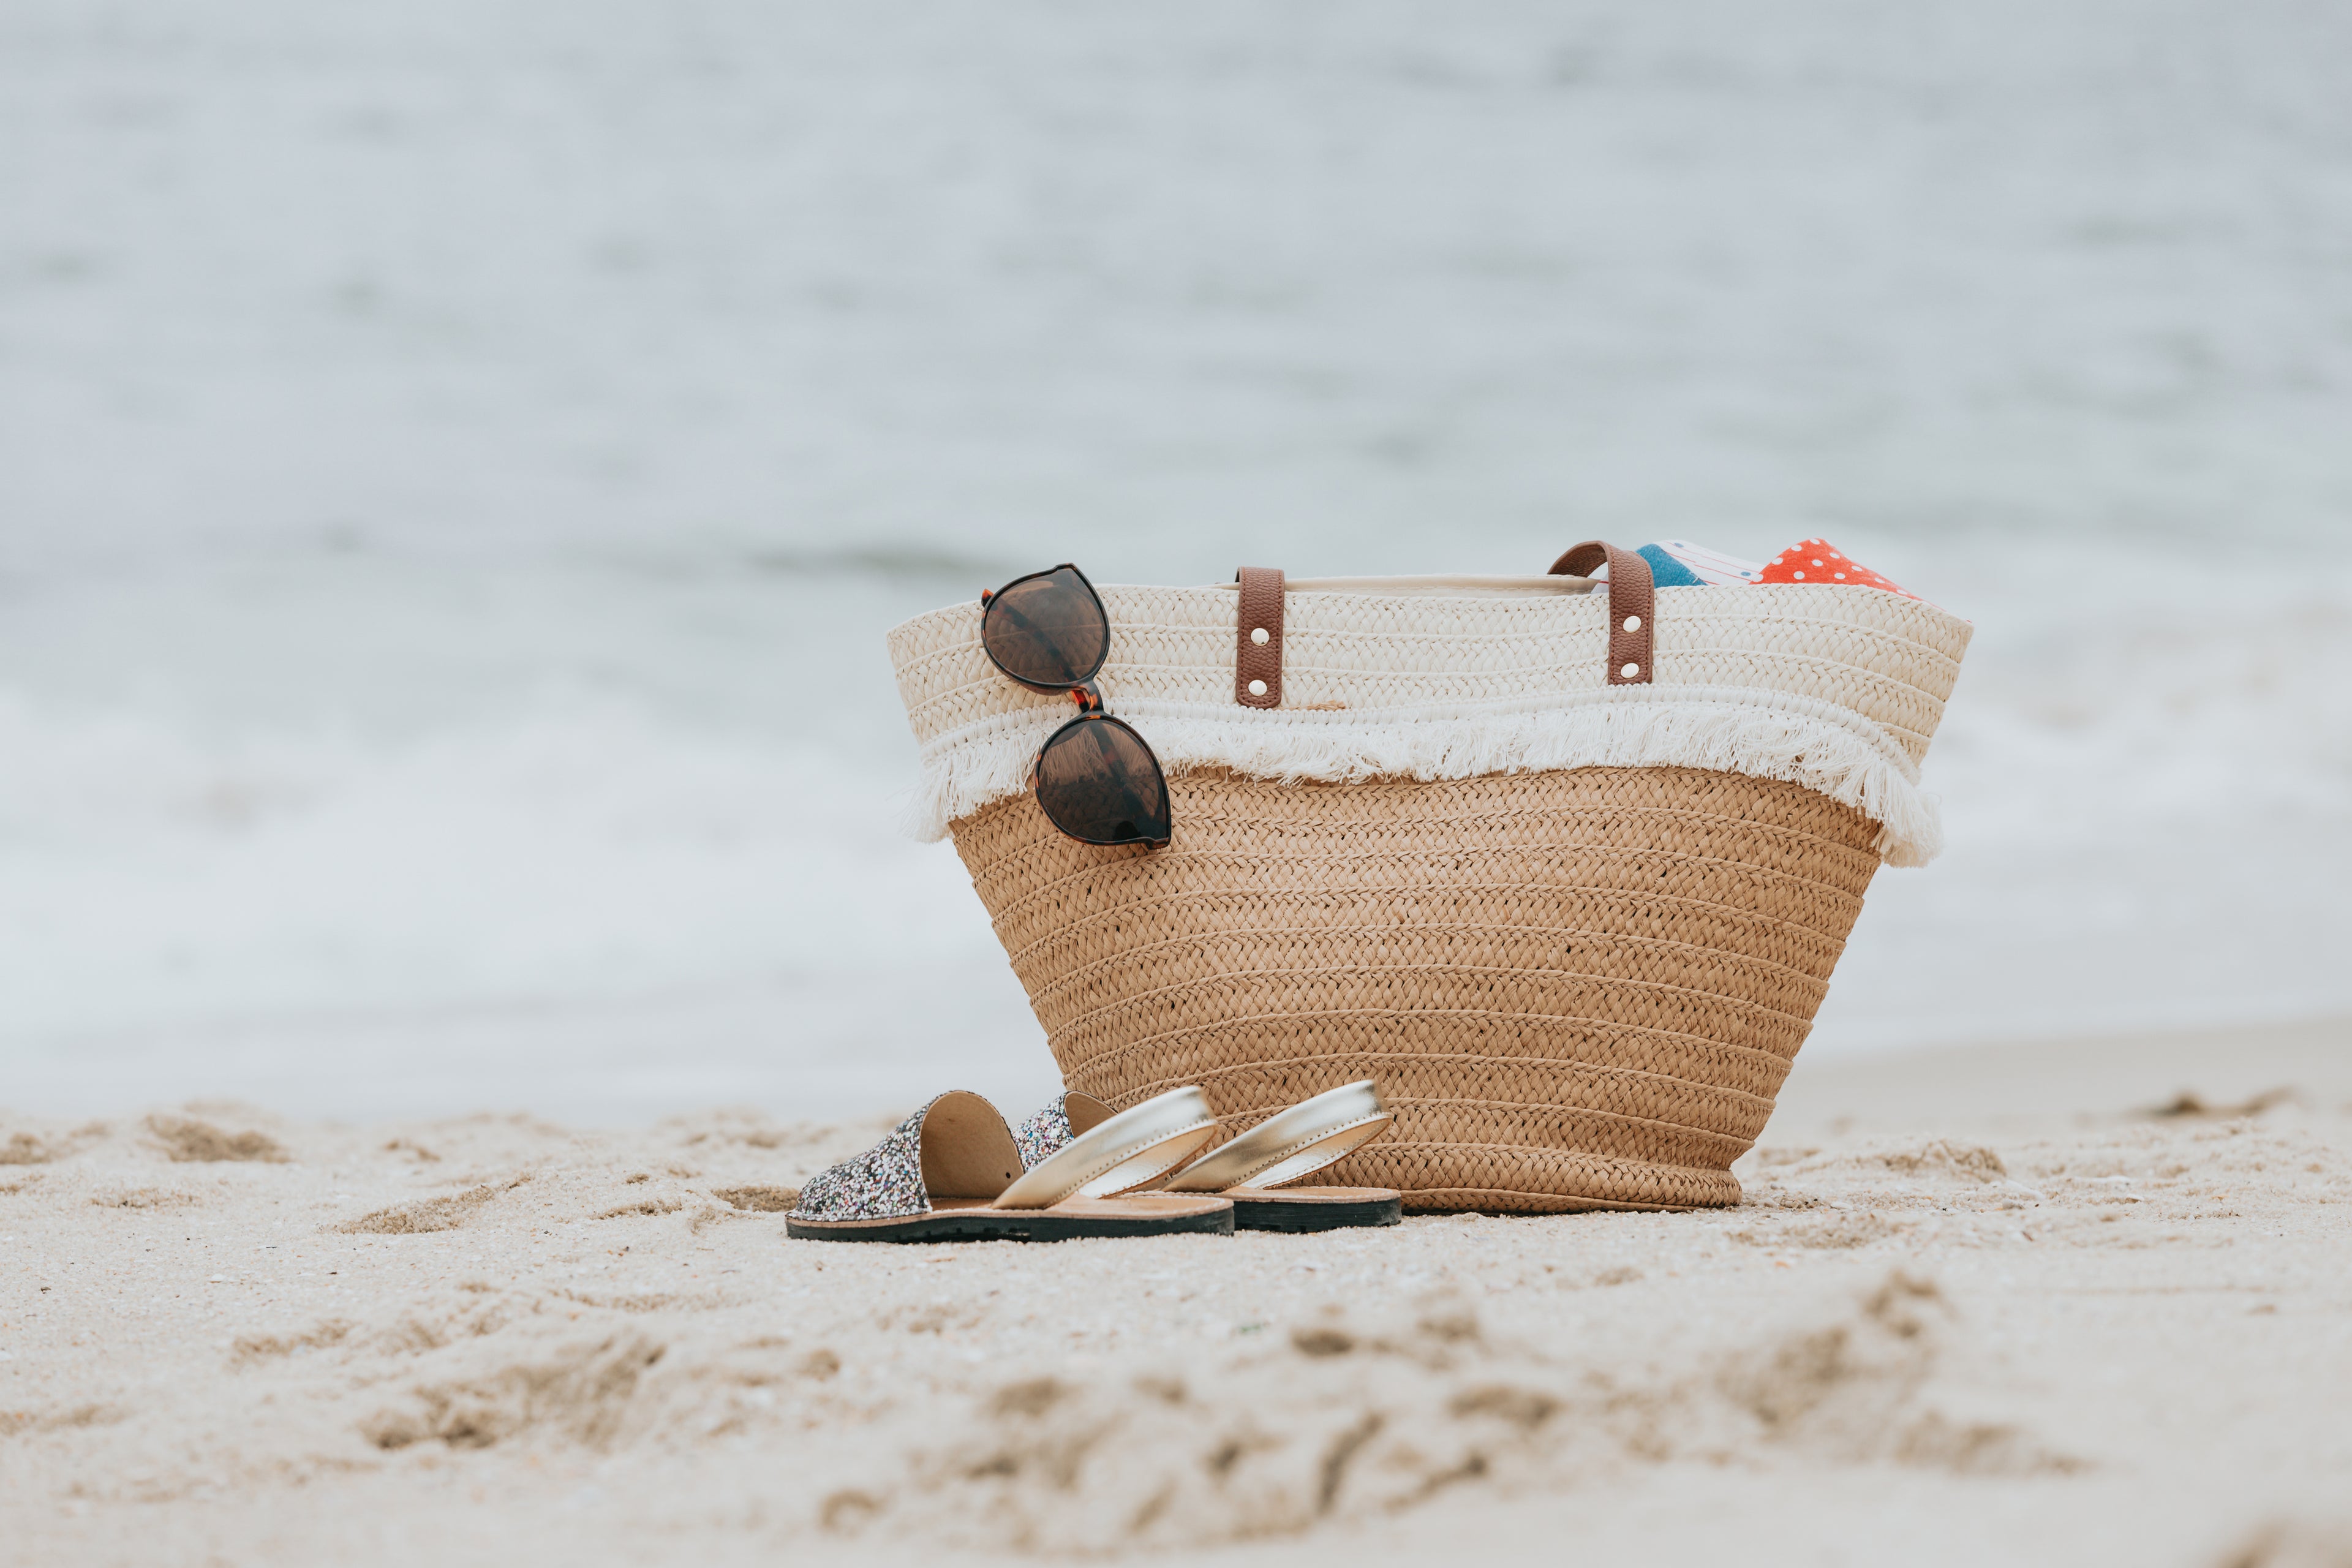 Beachbag, sunglass, and flip flops on beach shoreline